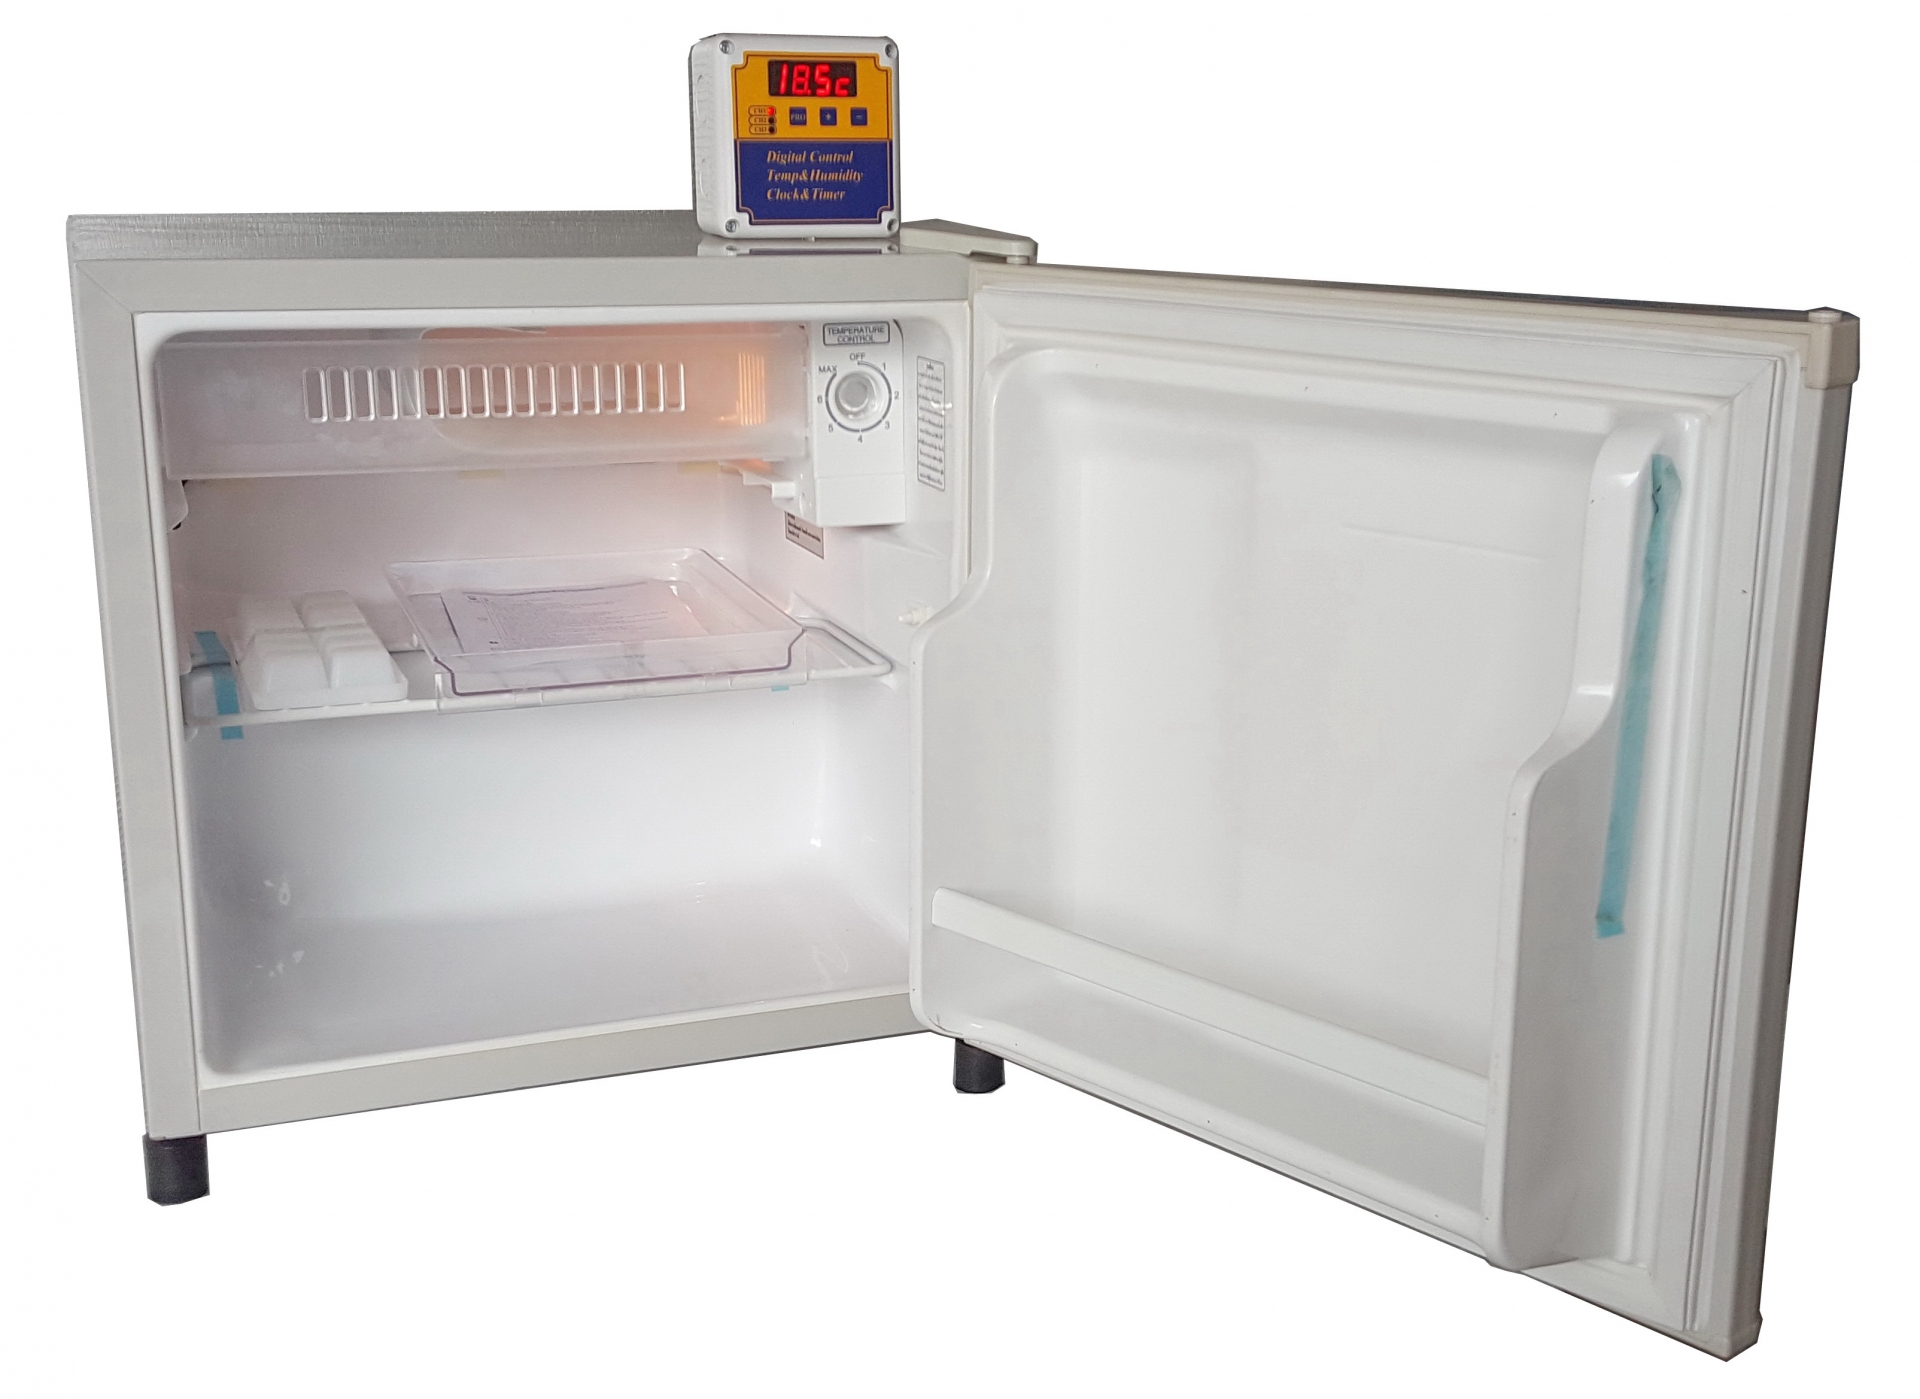 รหัส สินค้า TH001 ตู้เย็นควบคุมอุณหภูมิ ขนาด 1.7 คิว